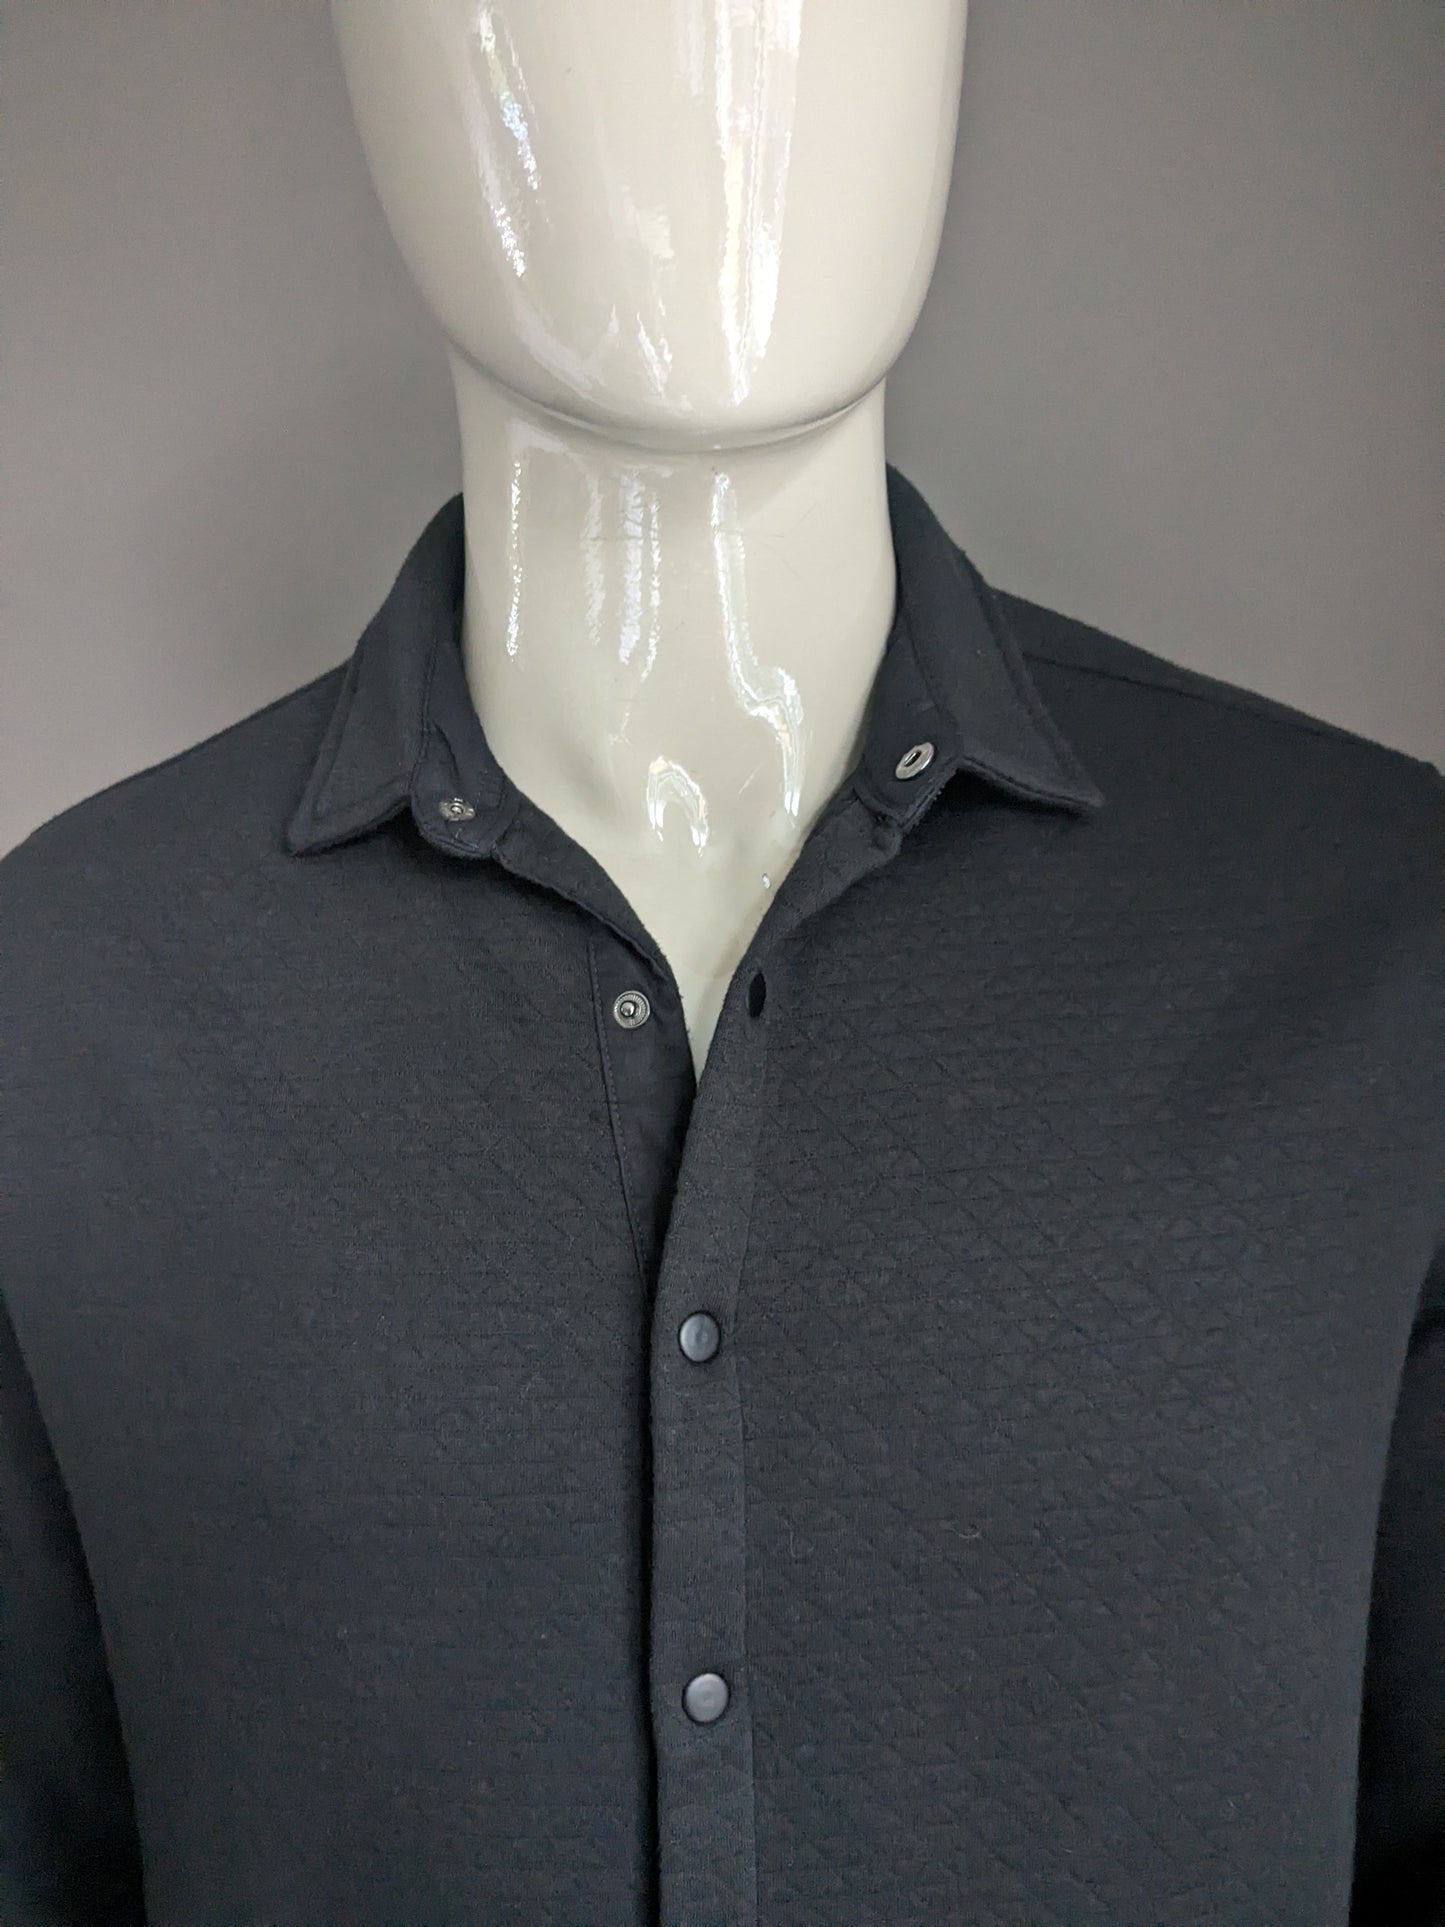 TU Premium Man overhemd met drukknopen. Donker Grijs voelbaar motief. Maat M.